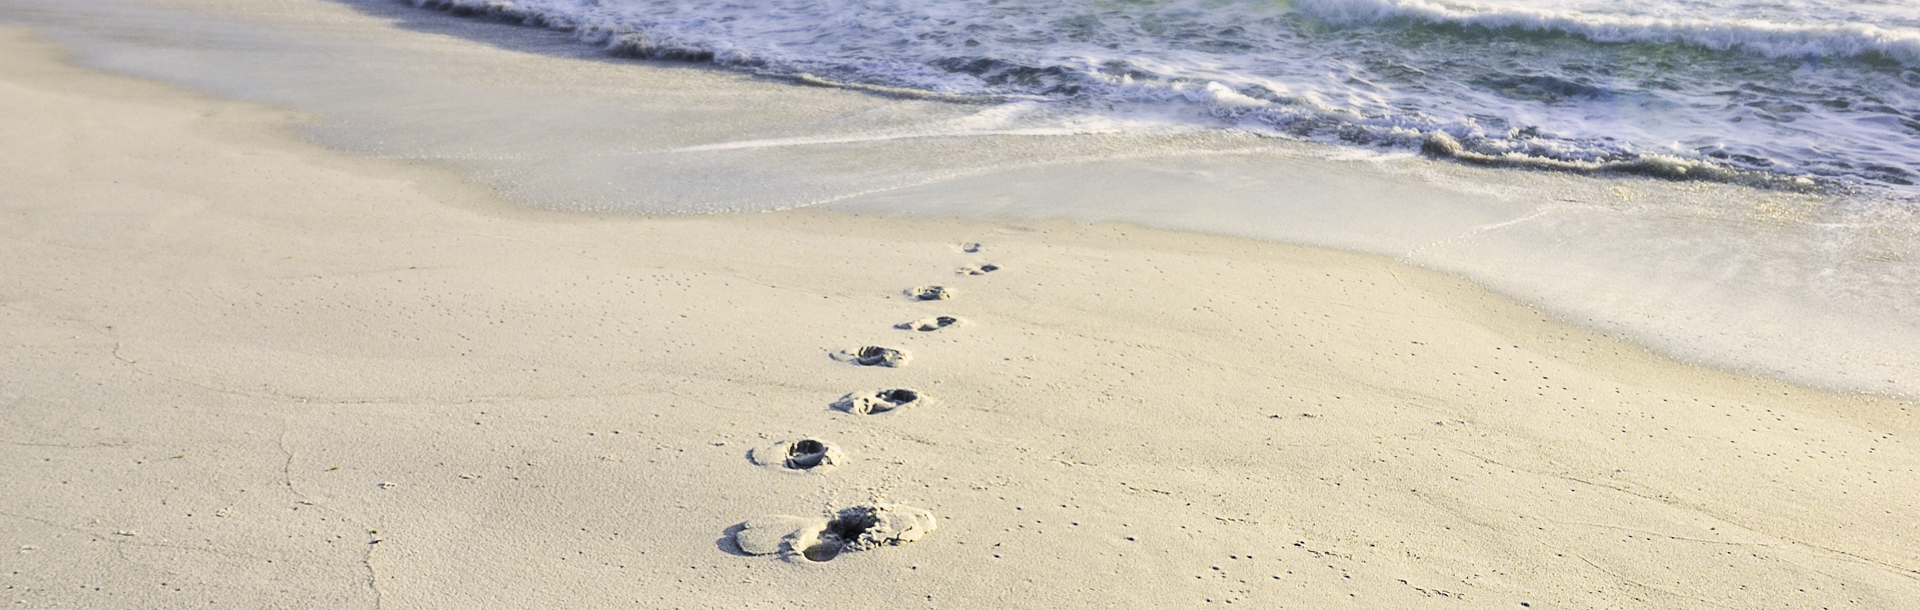 Footprints in sand.jpg